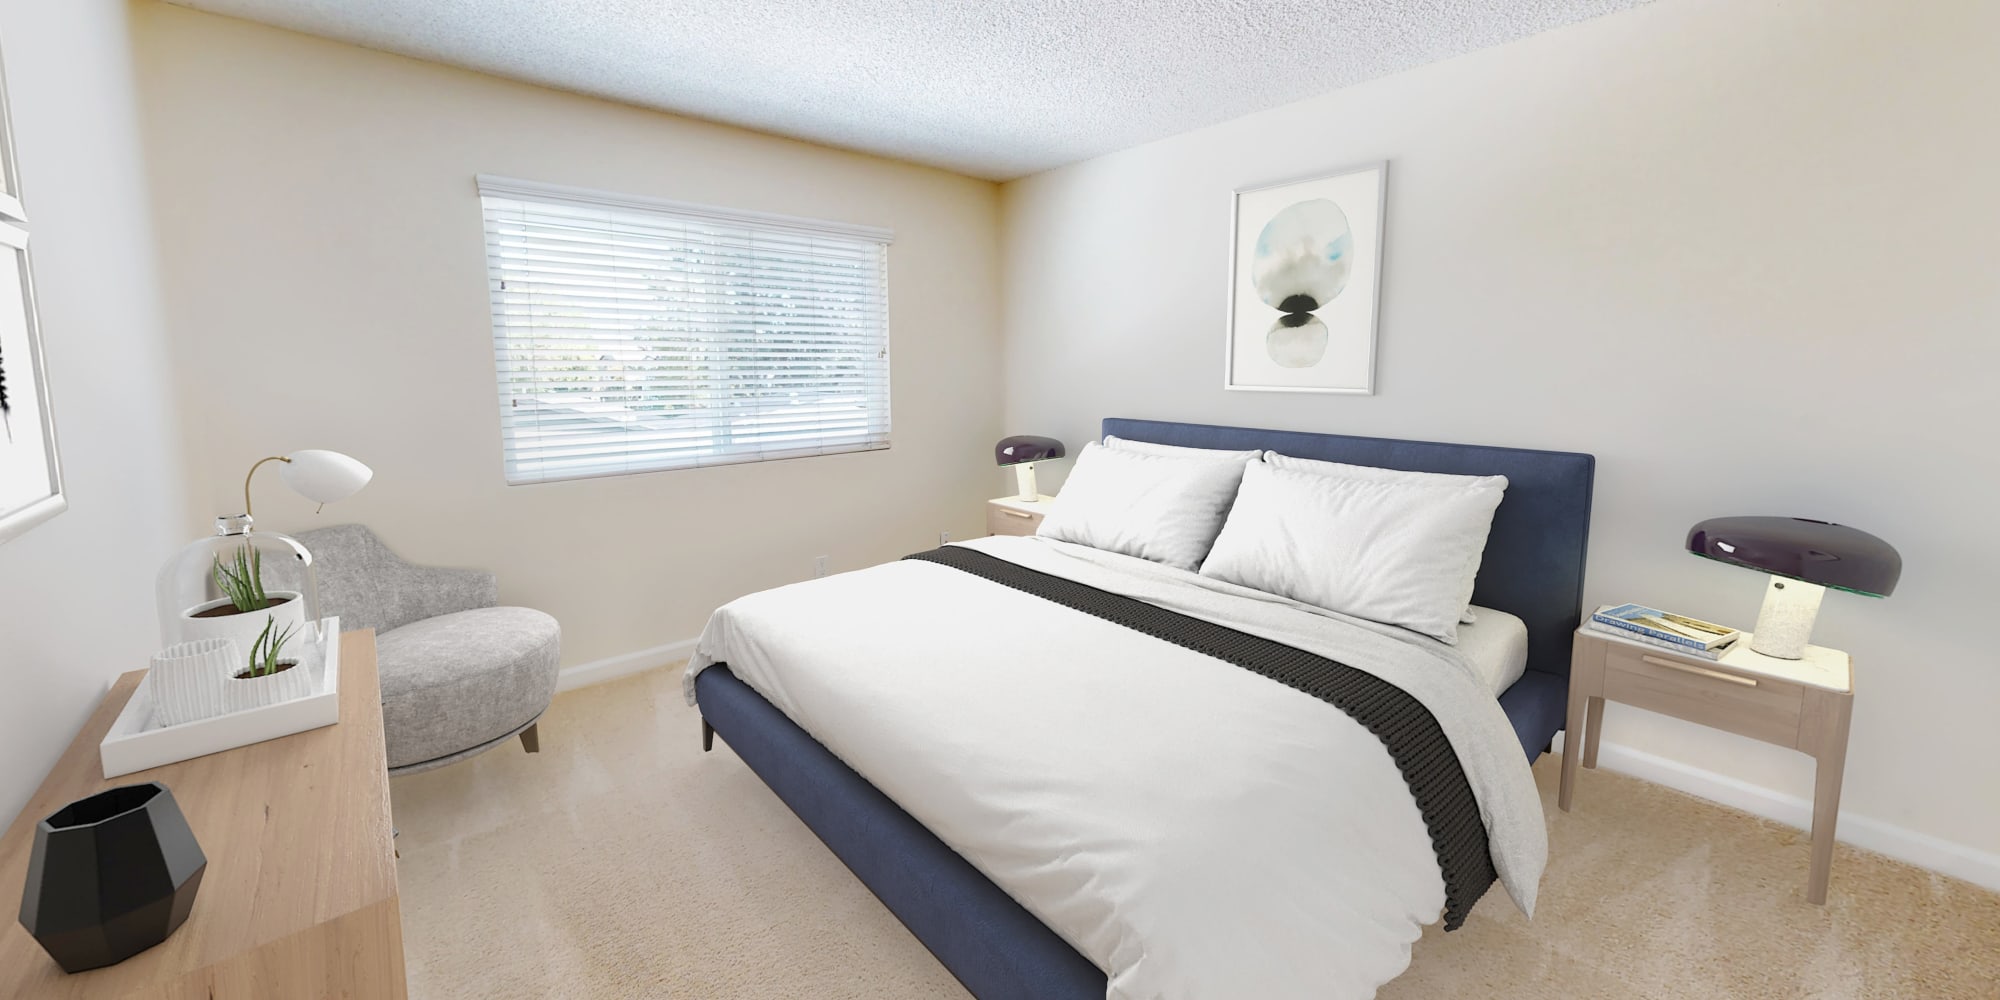 Primary bedroom suite of a model home at Pleasanton Glen Apartment Homes in Pleasanton, CA